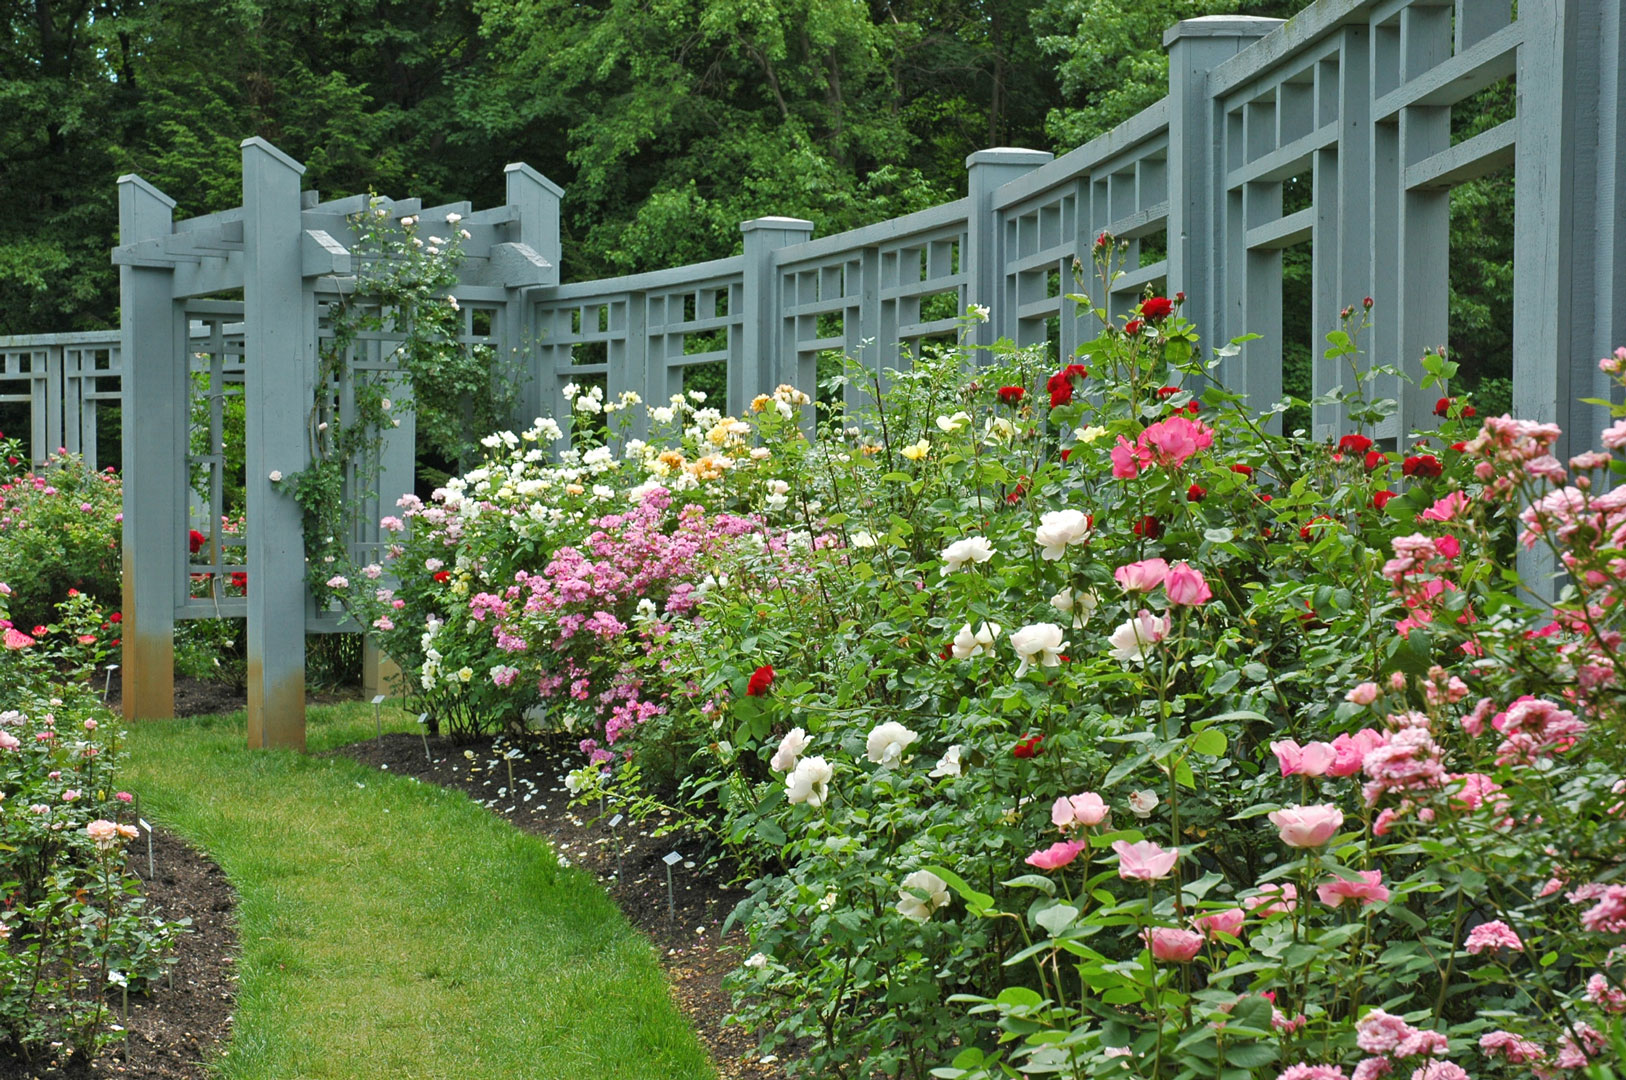 Inn Roses By Rose Garden Trellis June B Knowles Metro Parks